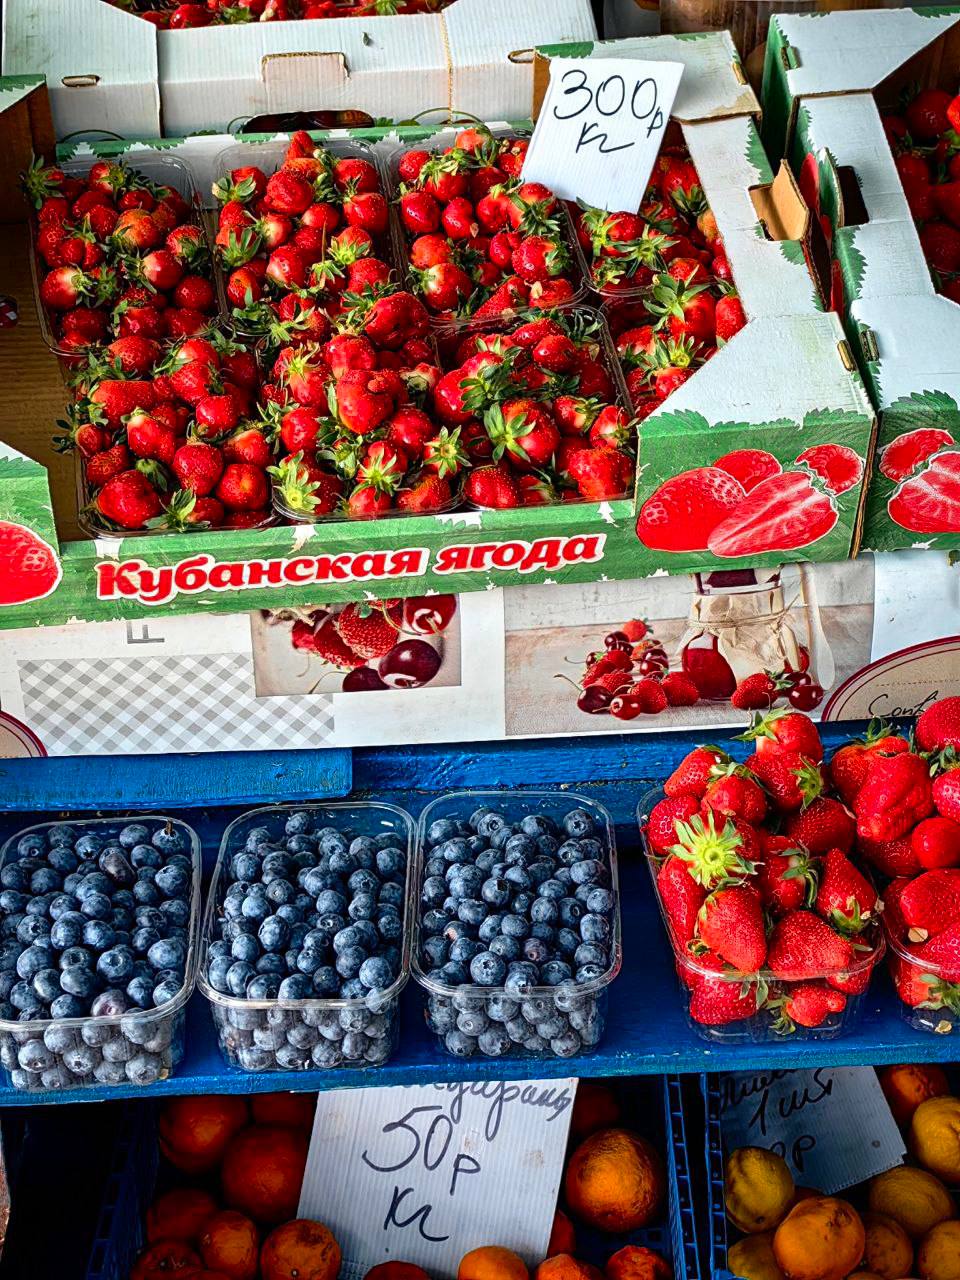 Стало известно, где самые низкие цены на клубнику в Краснодаре